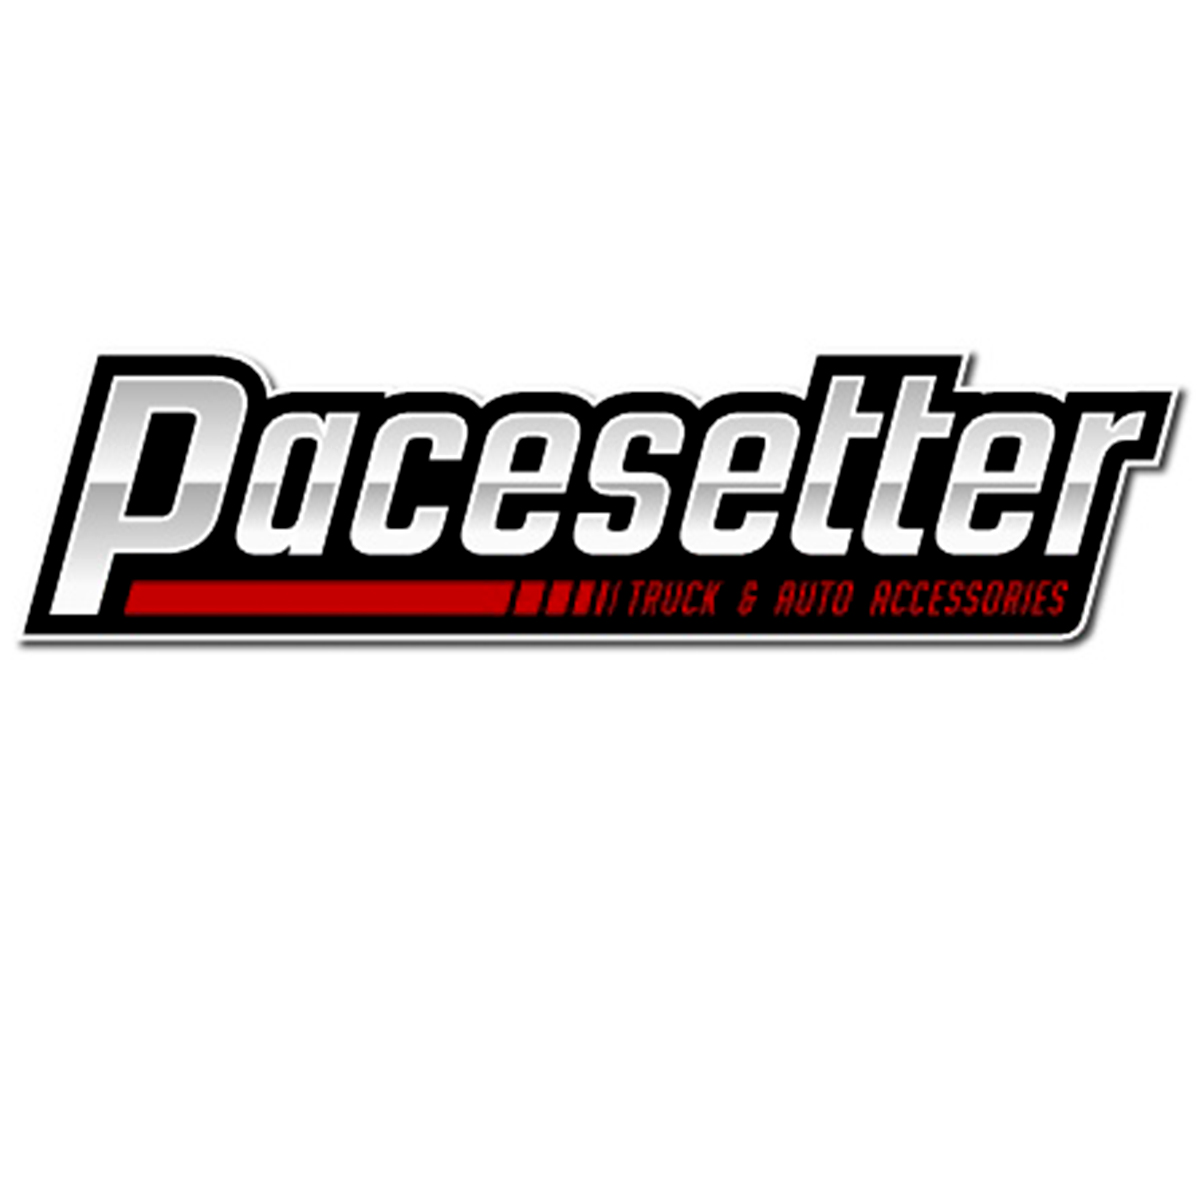 Pacesetter Truck & Auto Accessories, Inc.-Bourbonnais IL - Logo